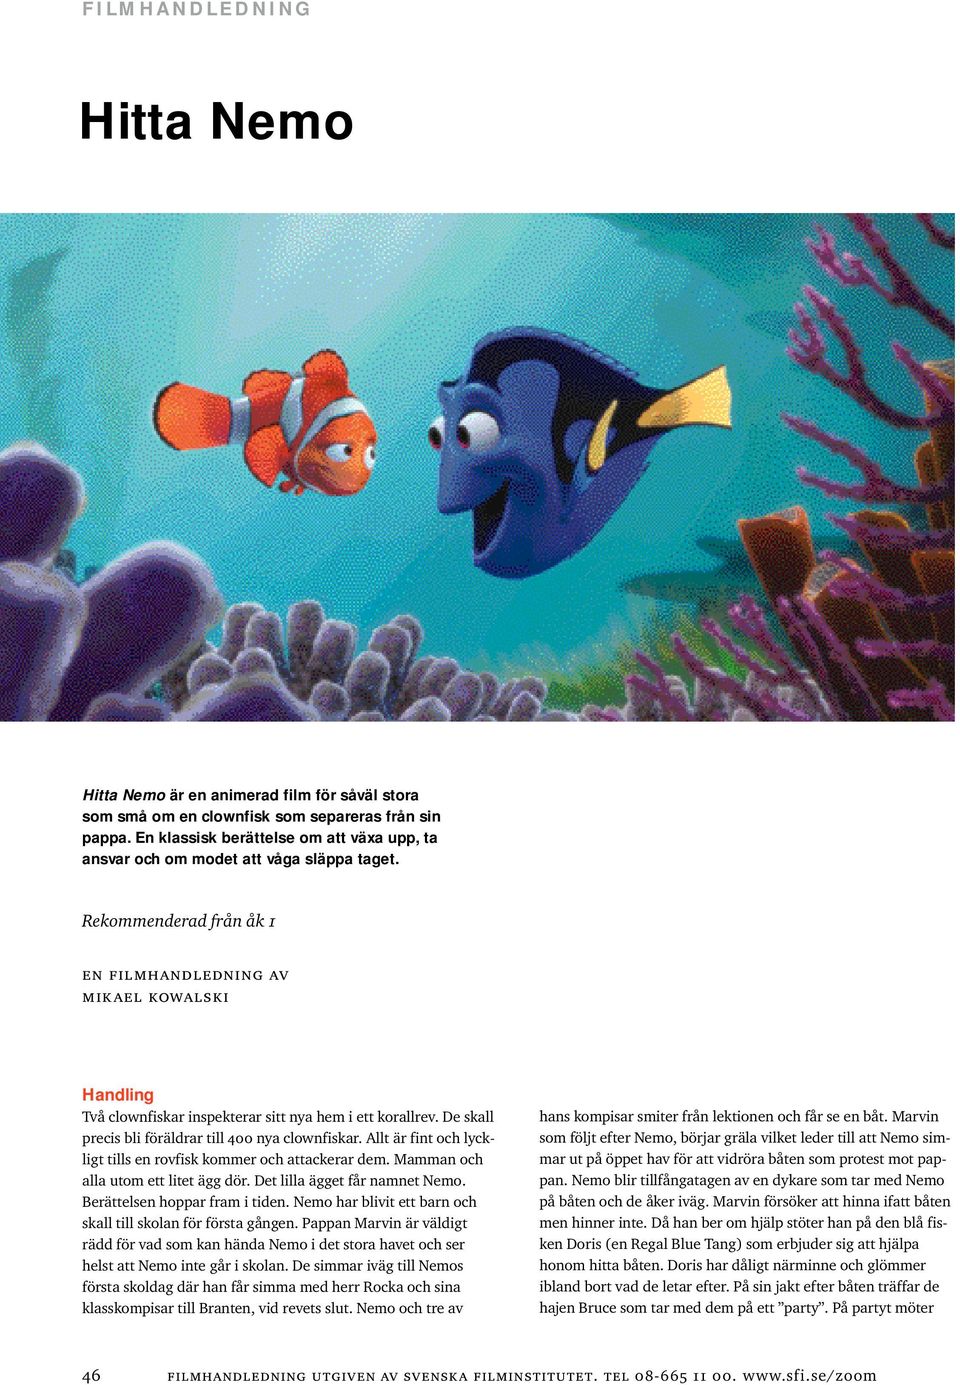 Hitta Nemo FILMHANDLEDNING. Rekommenderad från åk 1. en filmhandledning av  mikael kowalski - PDF Free Download